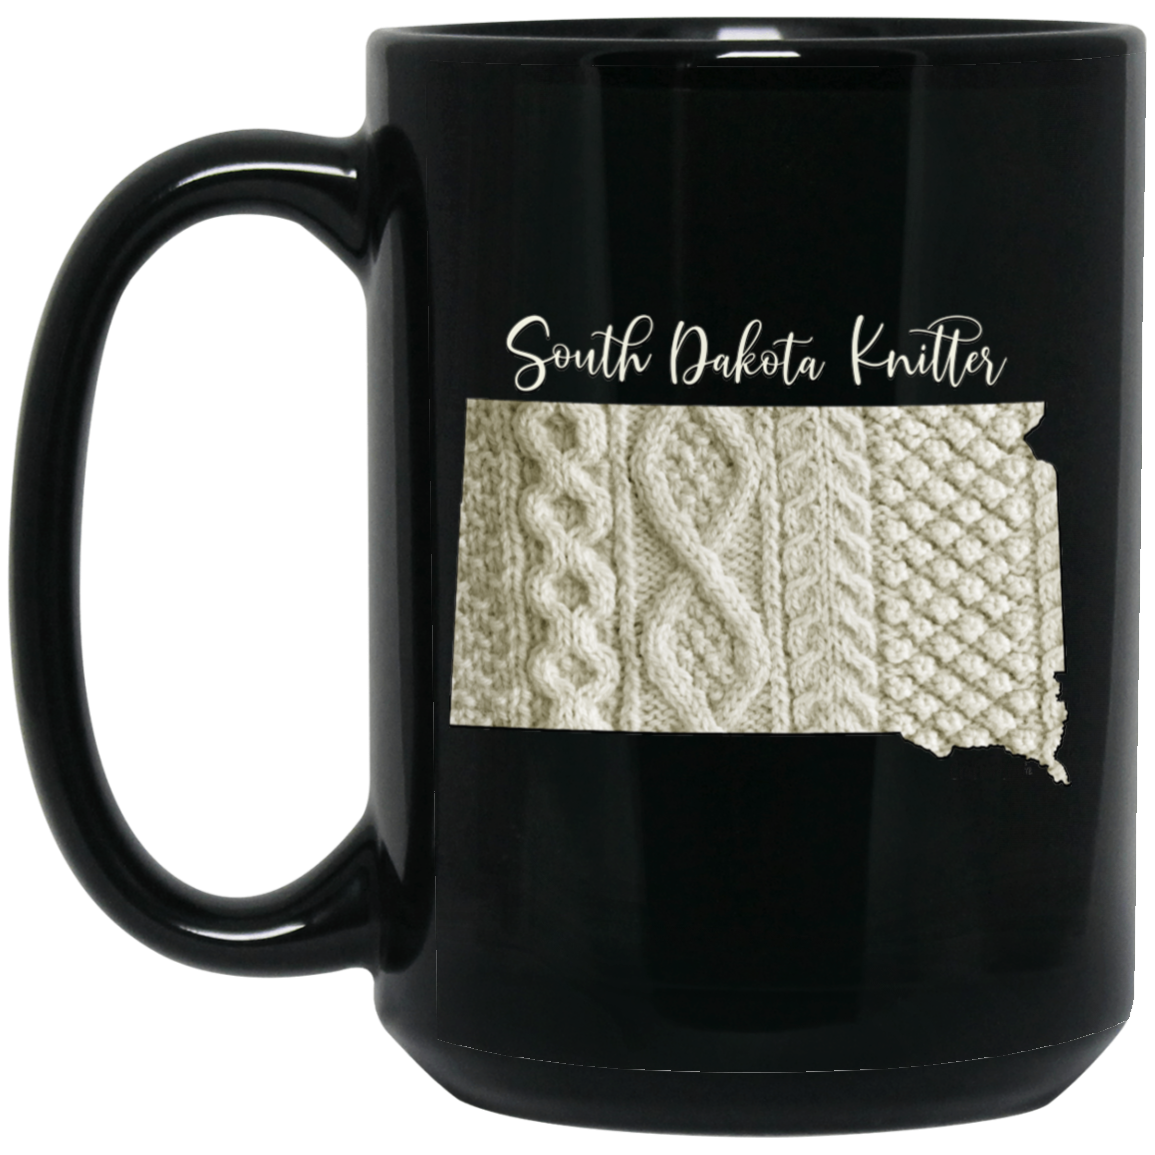 South Dakota Knitter Mugs